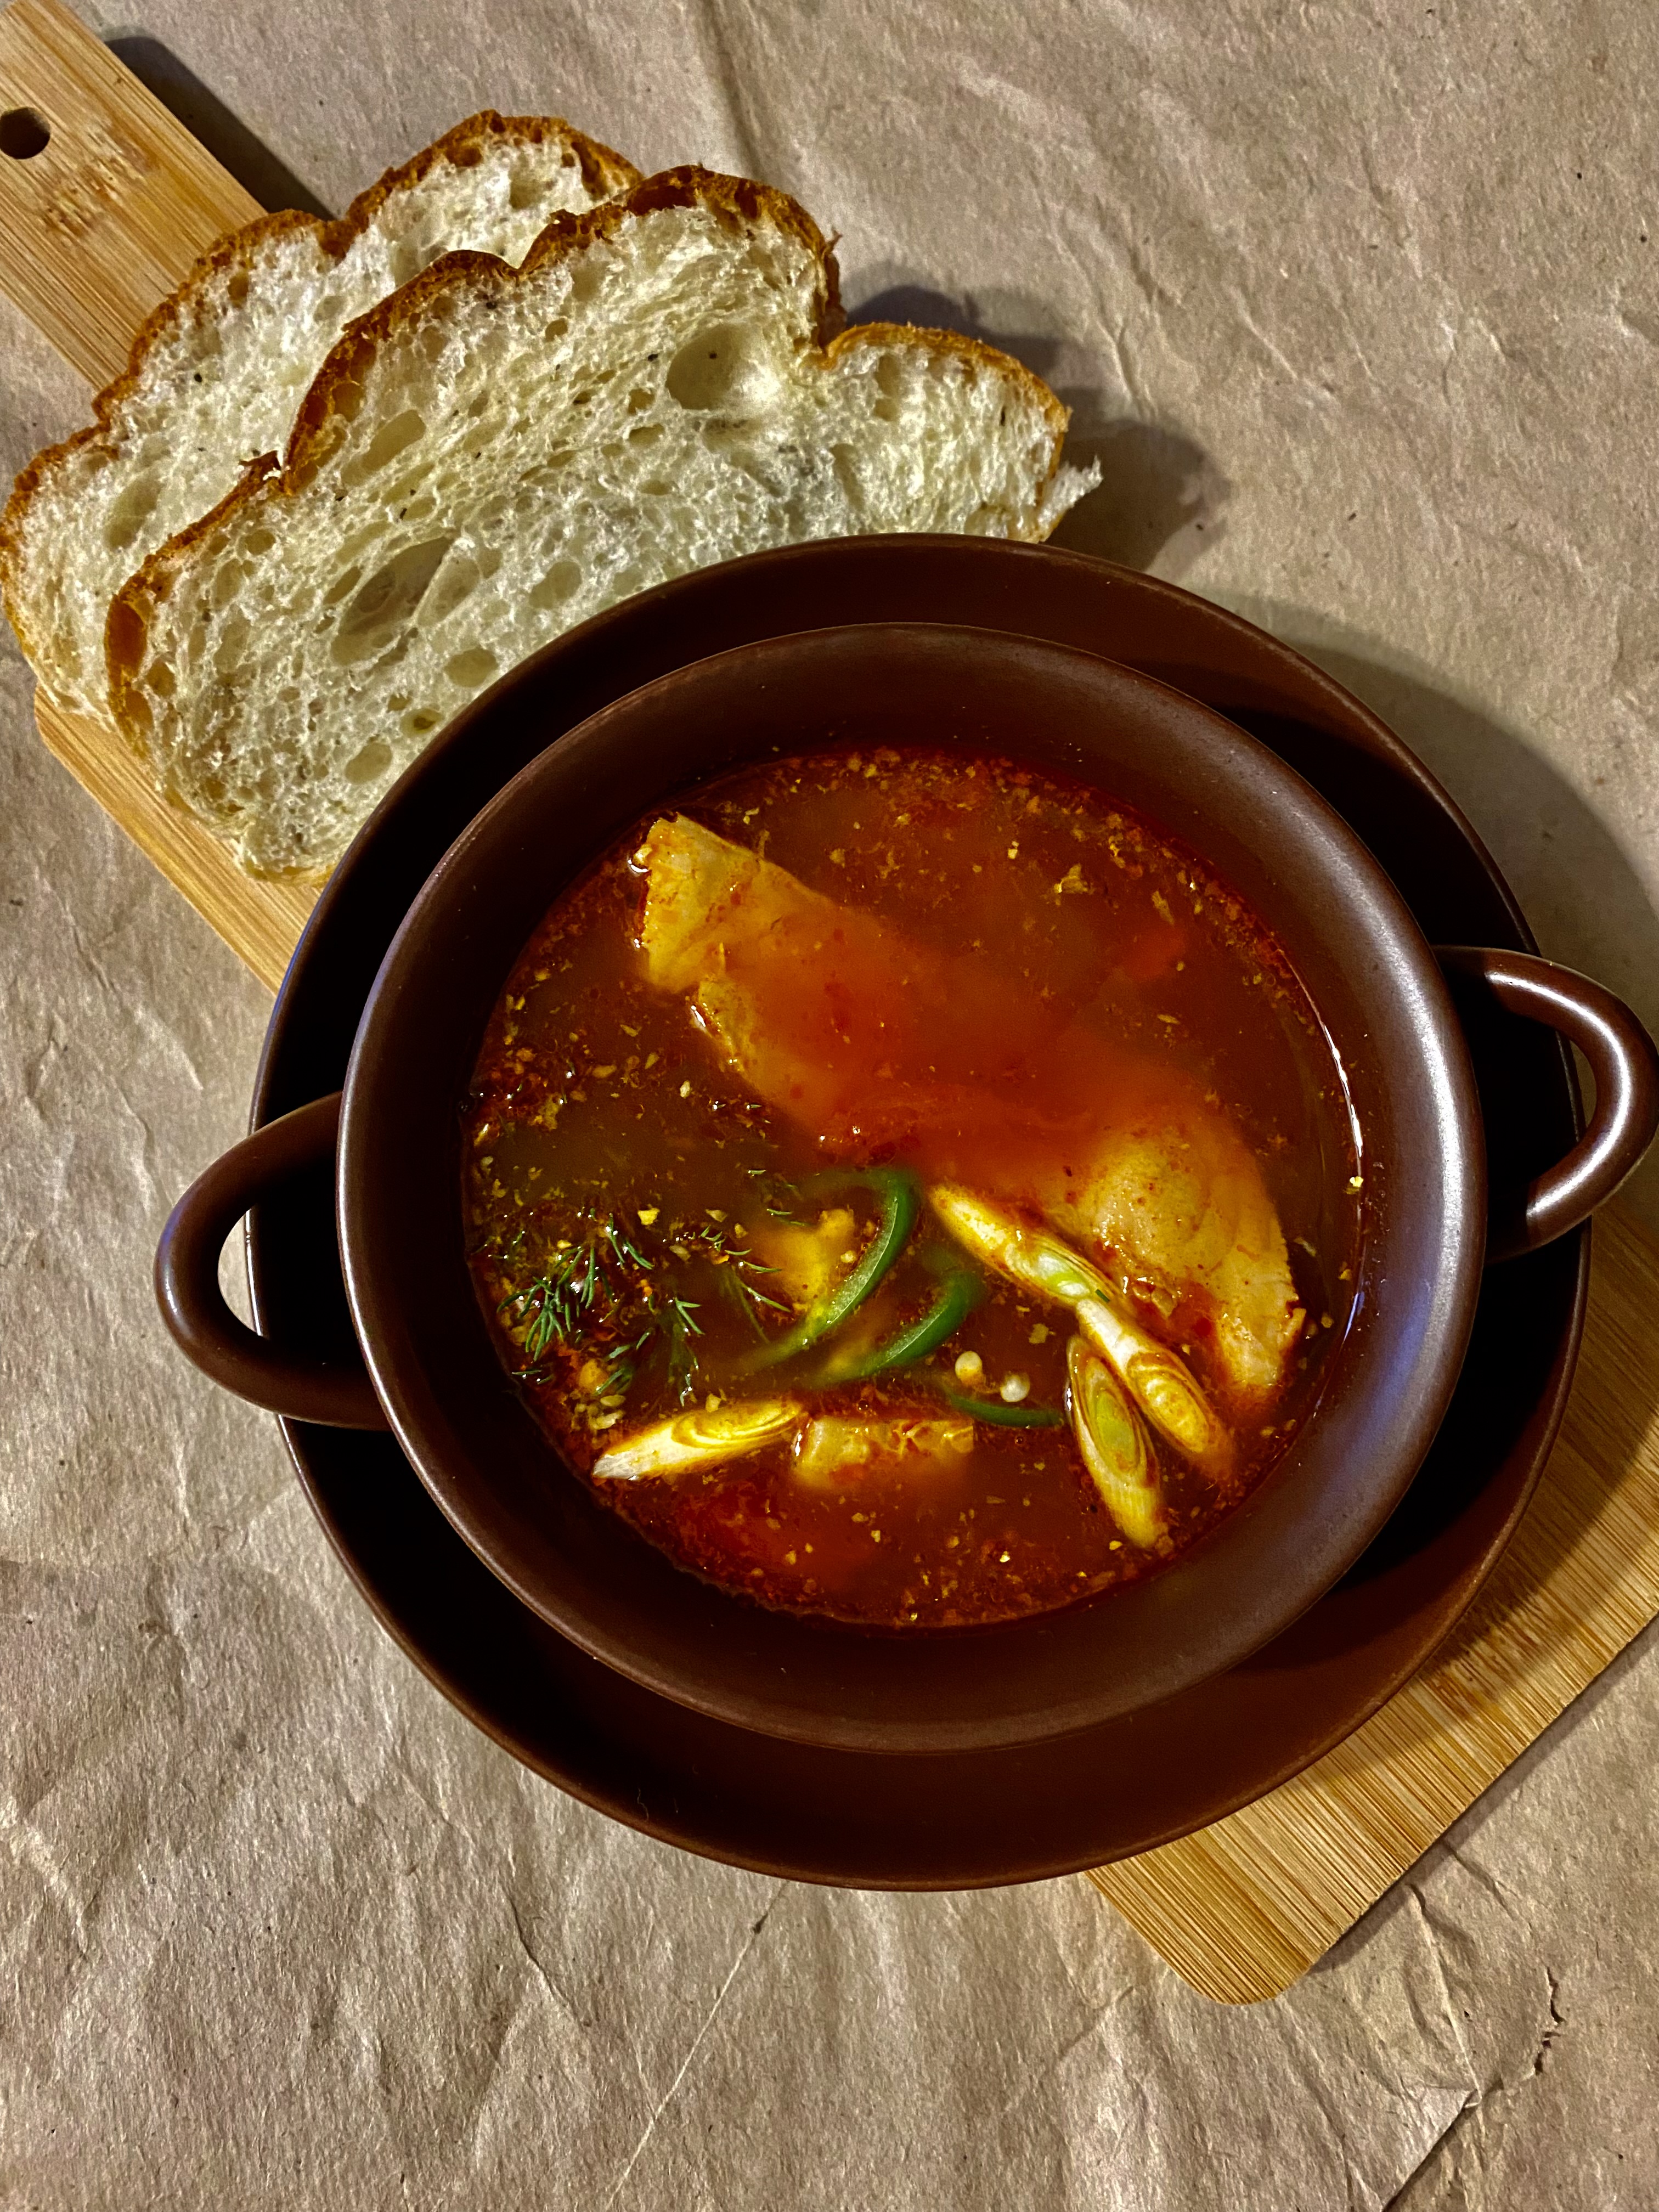  🇭🇺 Халасле (halászlé) венгерский рыбный суп